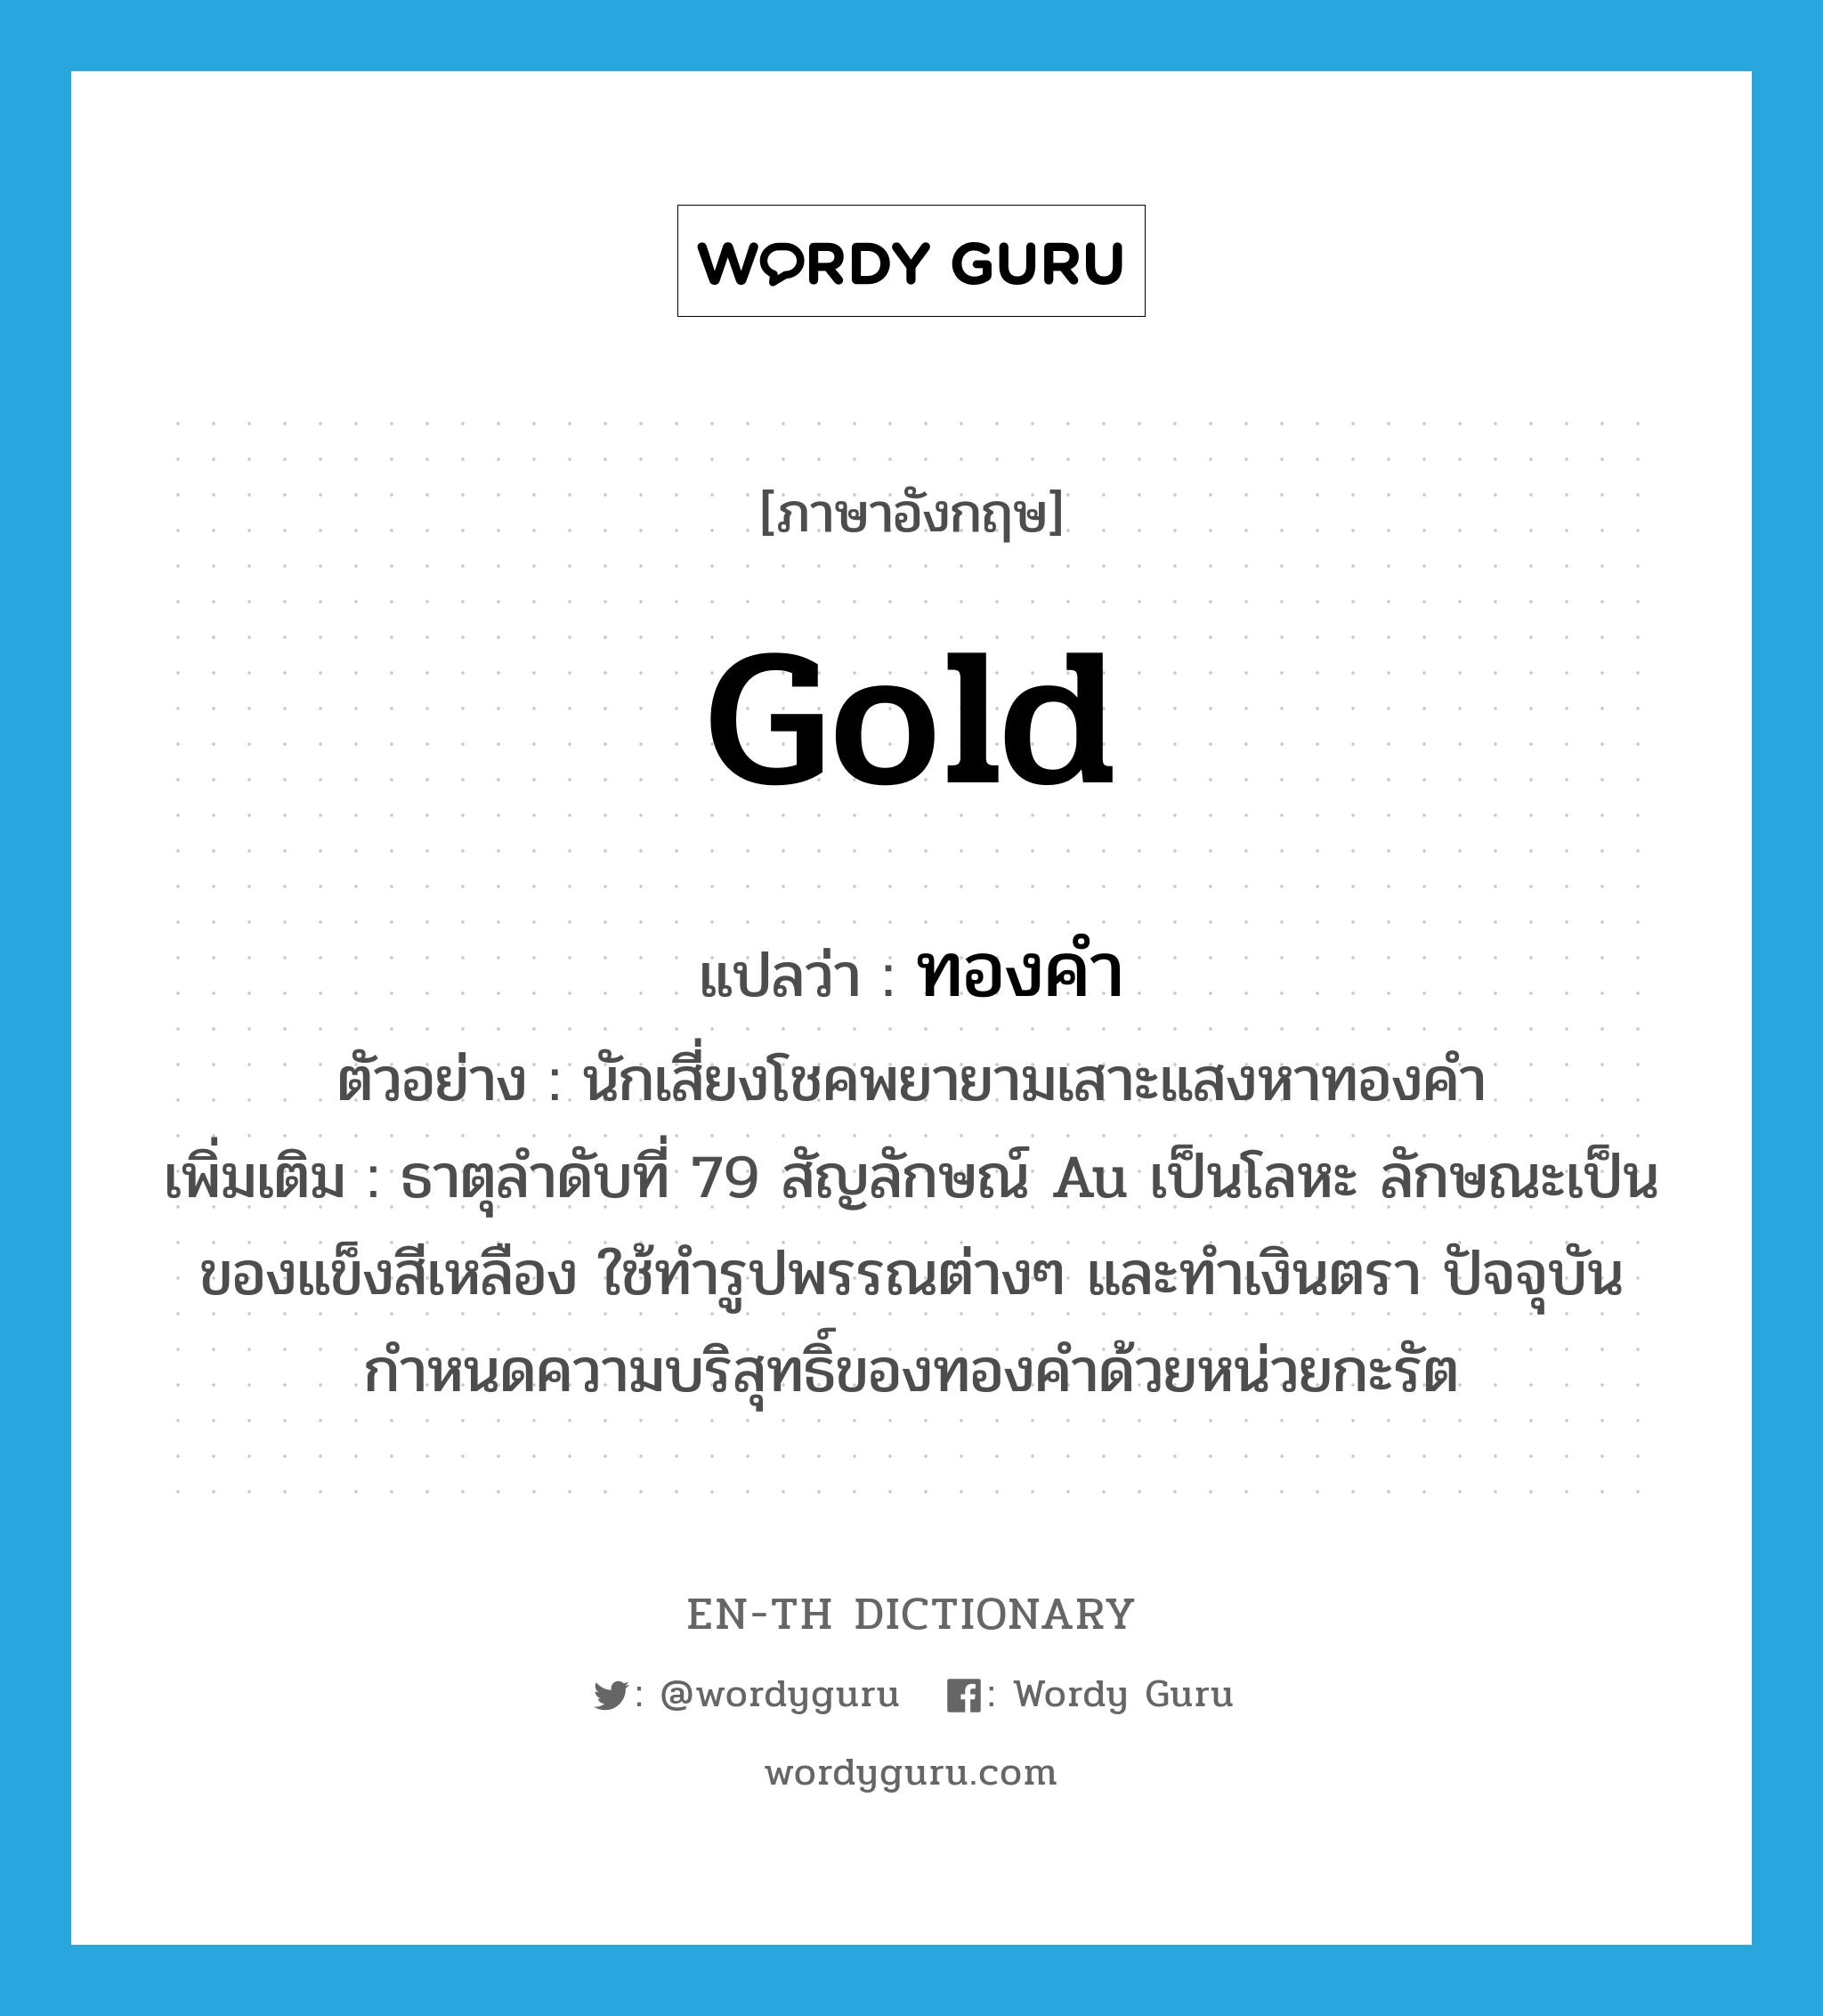 gold แปลว่า?, คำศัพท์ภาษาอังกฤษ gold แปลว่า ทองคำ ประเภท N ตัวอย่าง นักเสี่ยงโชคพยายามเสาะแสงหาทองคำ เพิ่มเติม ธาตุลำดับที่ 79 สัญลักษณ์ Au เป็นโลหะ ลักษณะเป็นของแข็งสีเหลือง ใช้ทำรูปพรรณต่างๆ และทำเงินตรา ปัจจุบันกำหนดความบริสุทธิ์ของทองคำด้วยหน่วยกะรัต หมวด N